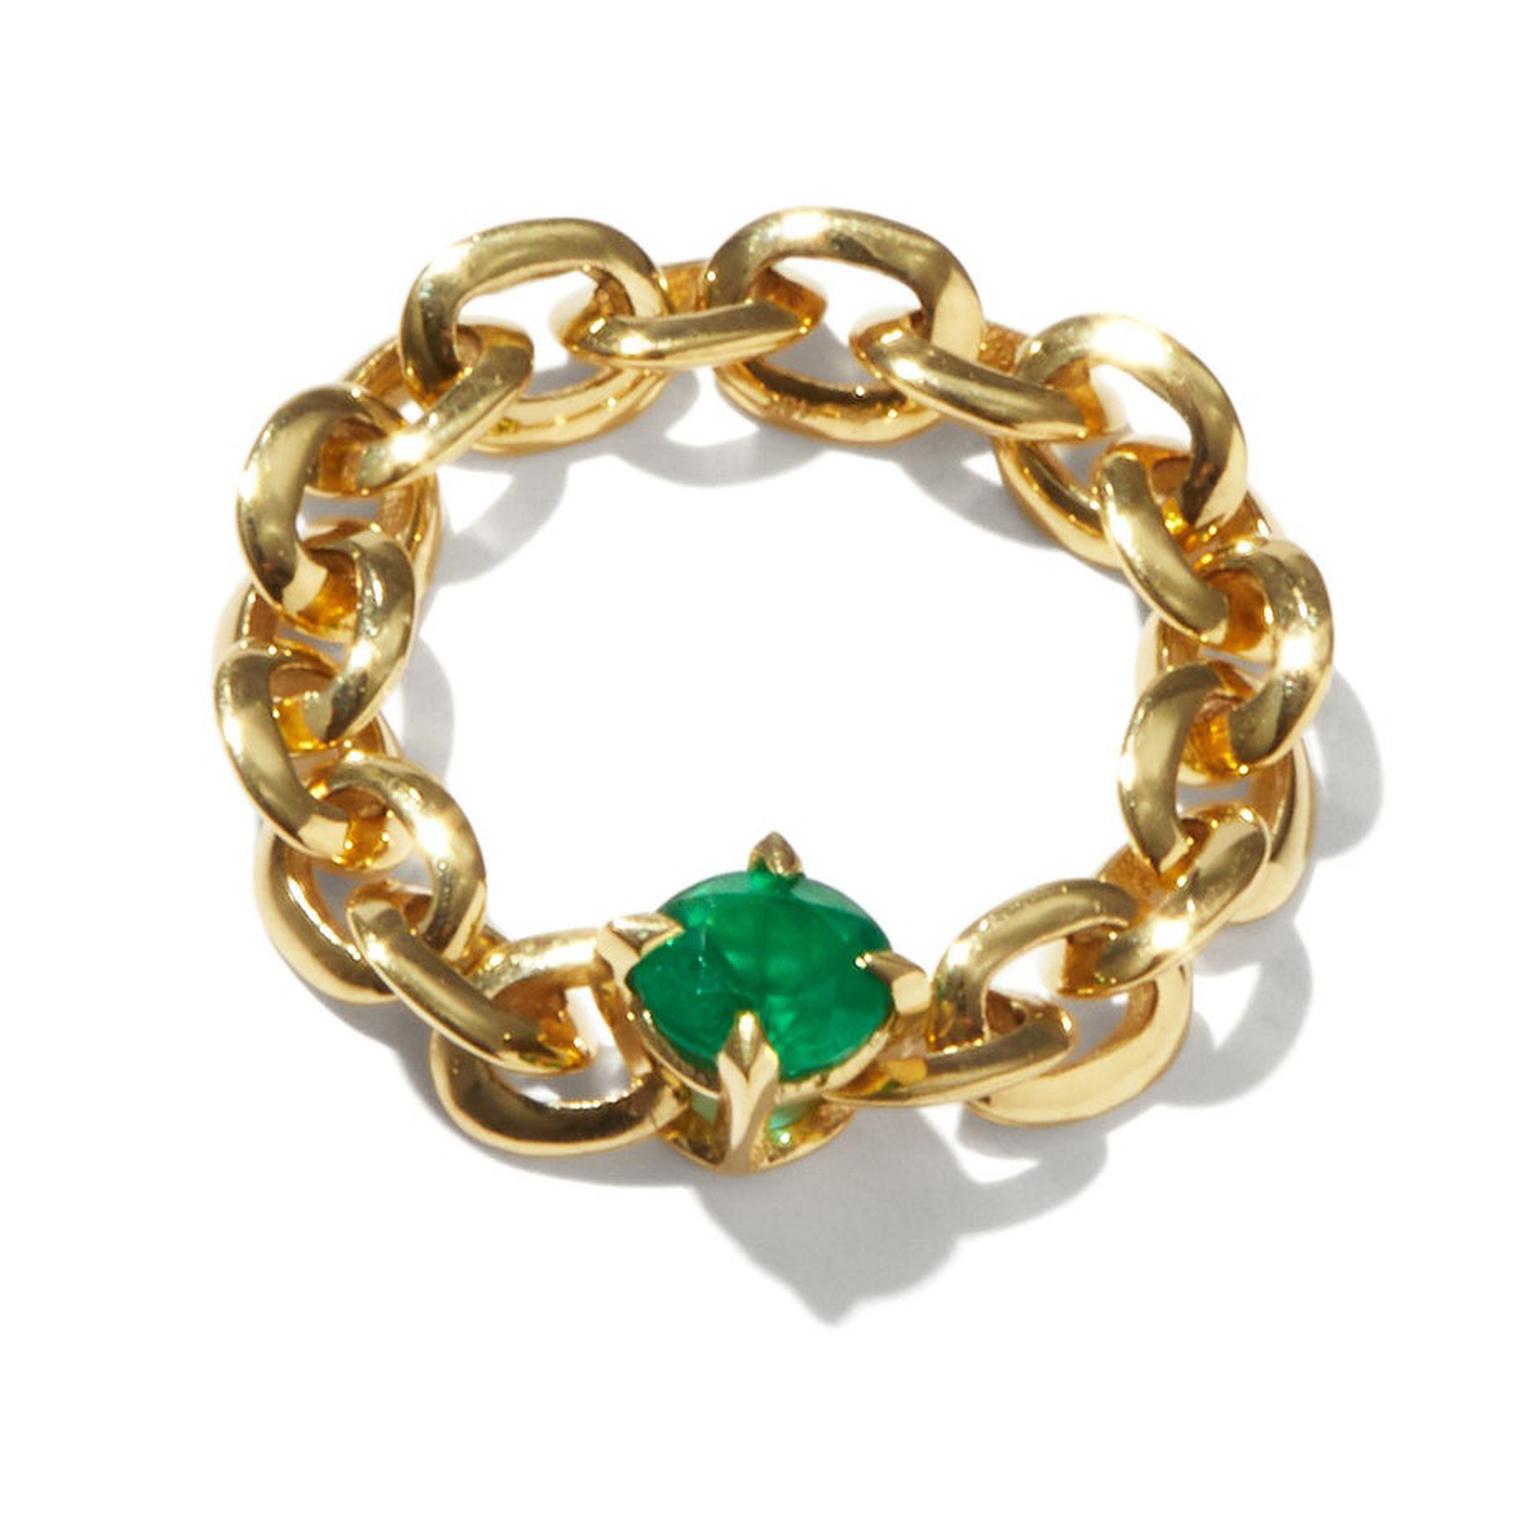 Lizzie Mandler chain ring